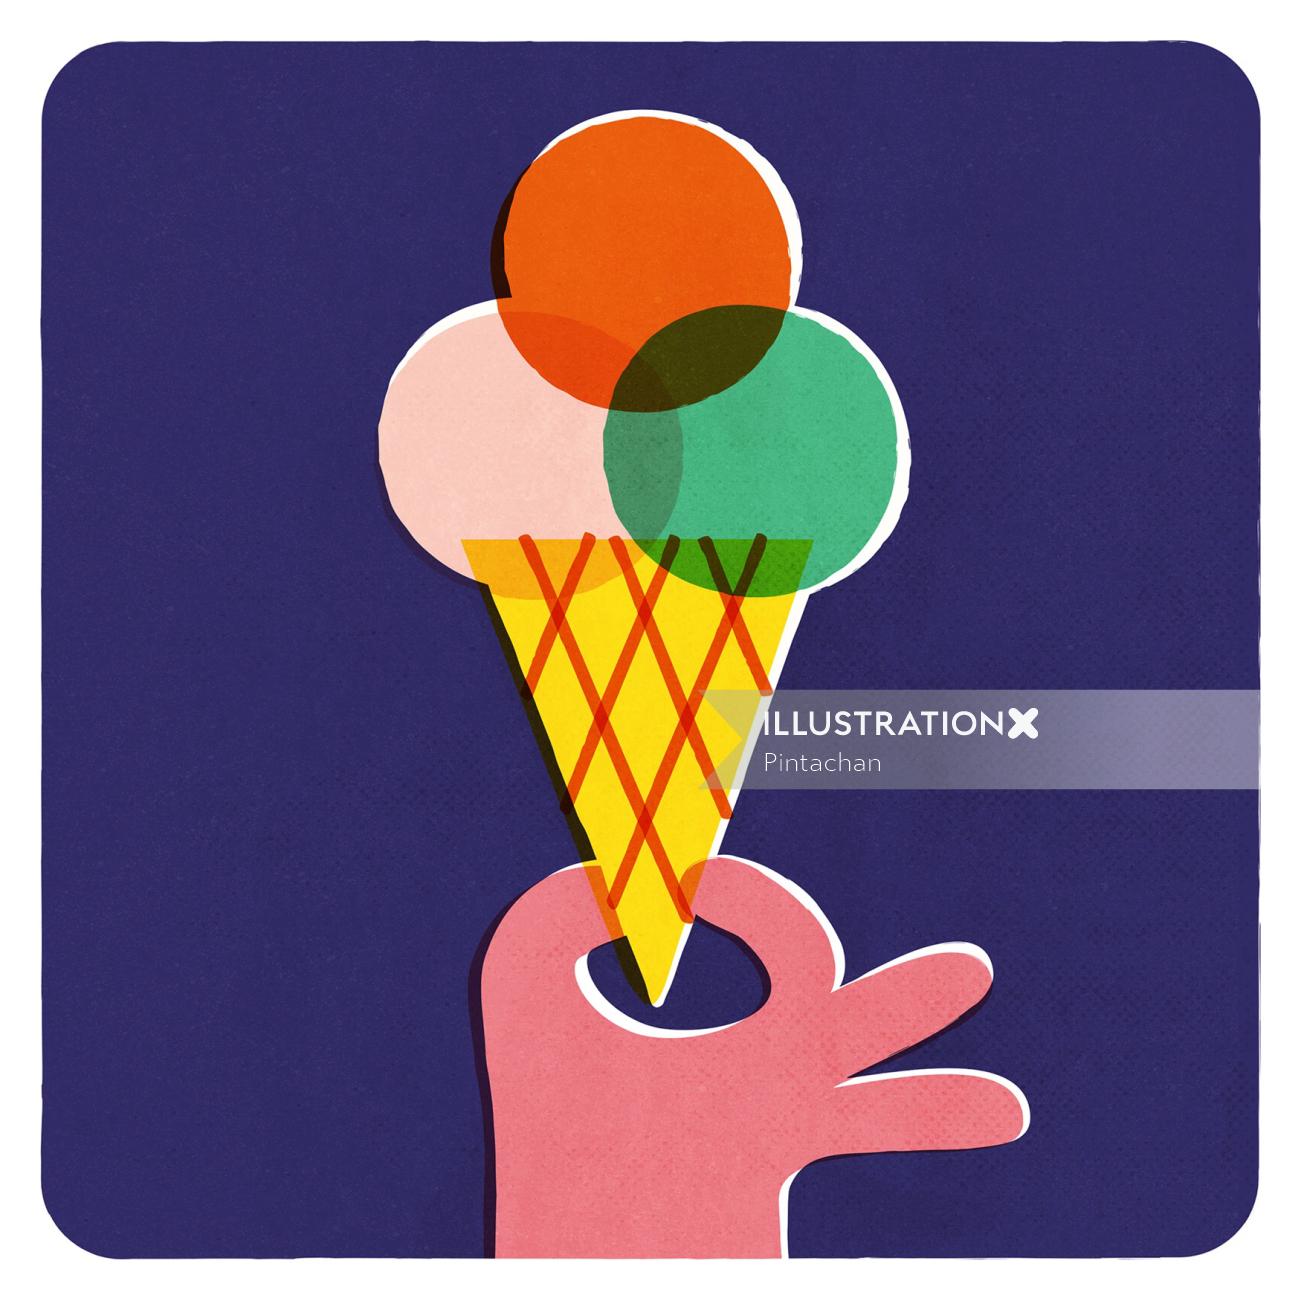 Ice Cream cone pop illustration